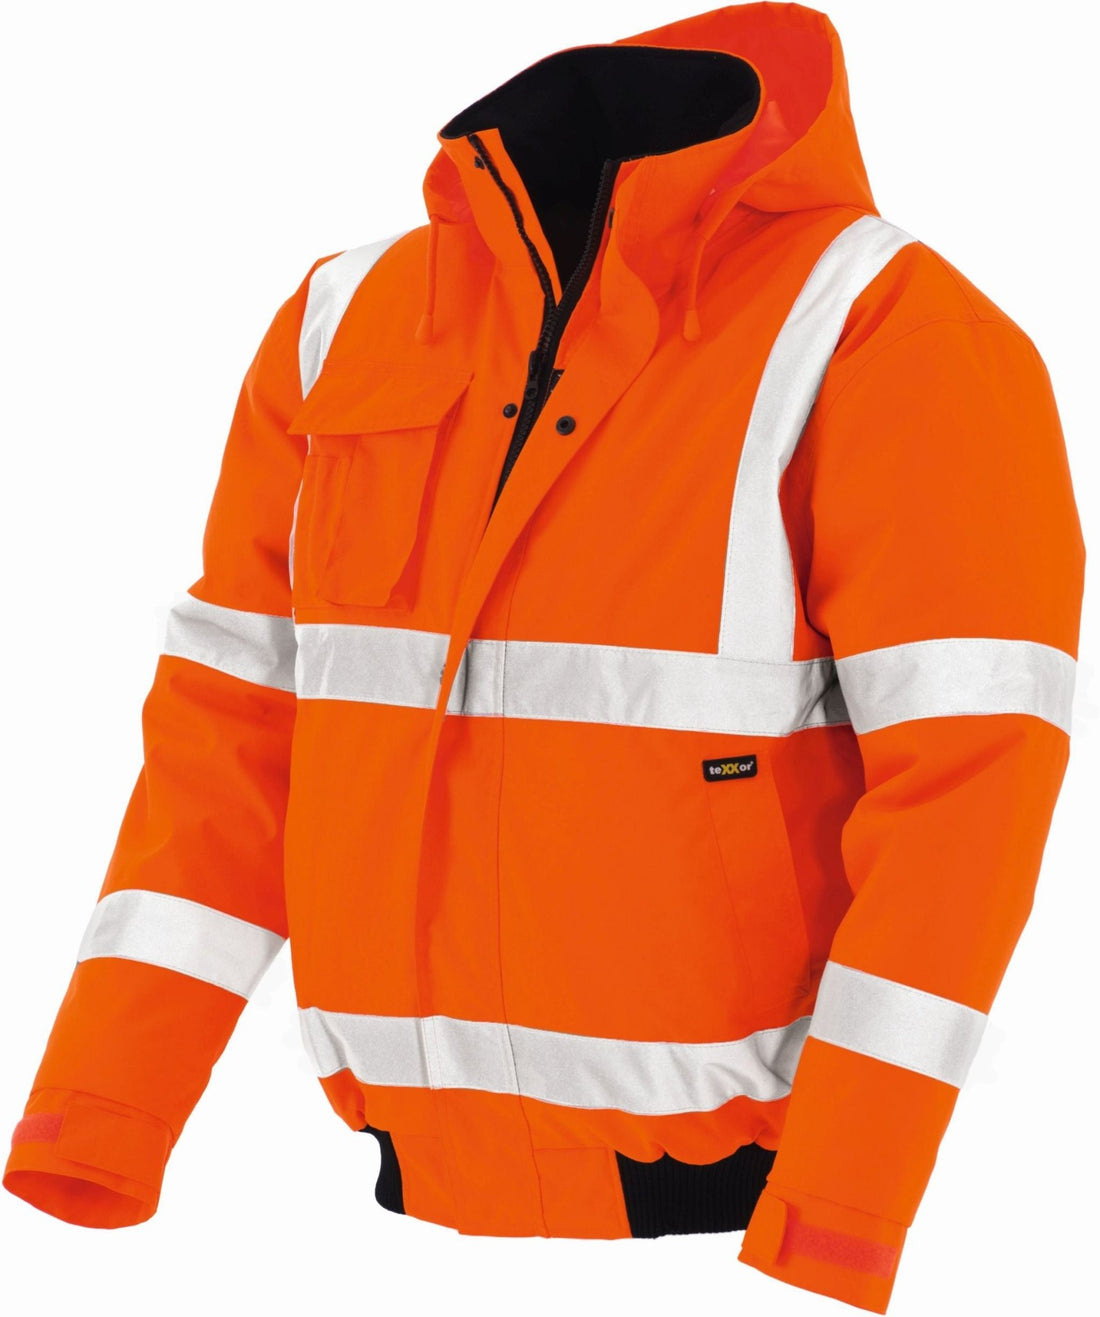 Die perfekte Warnschutz Jacke für Einsatzbereich Deinen